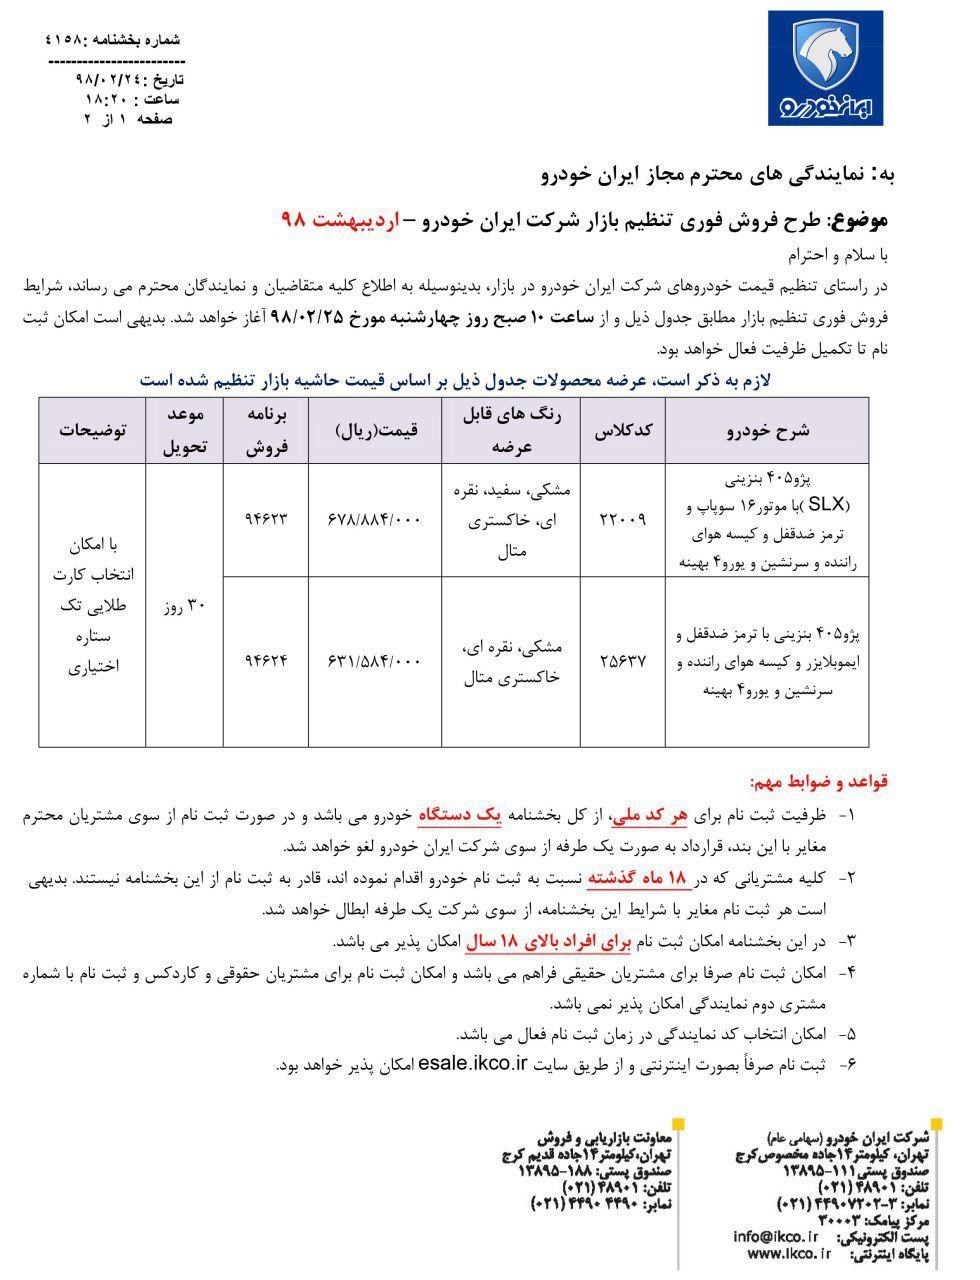 شرایط فروش ایران خودرو 25 اردیبهشت 98